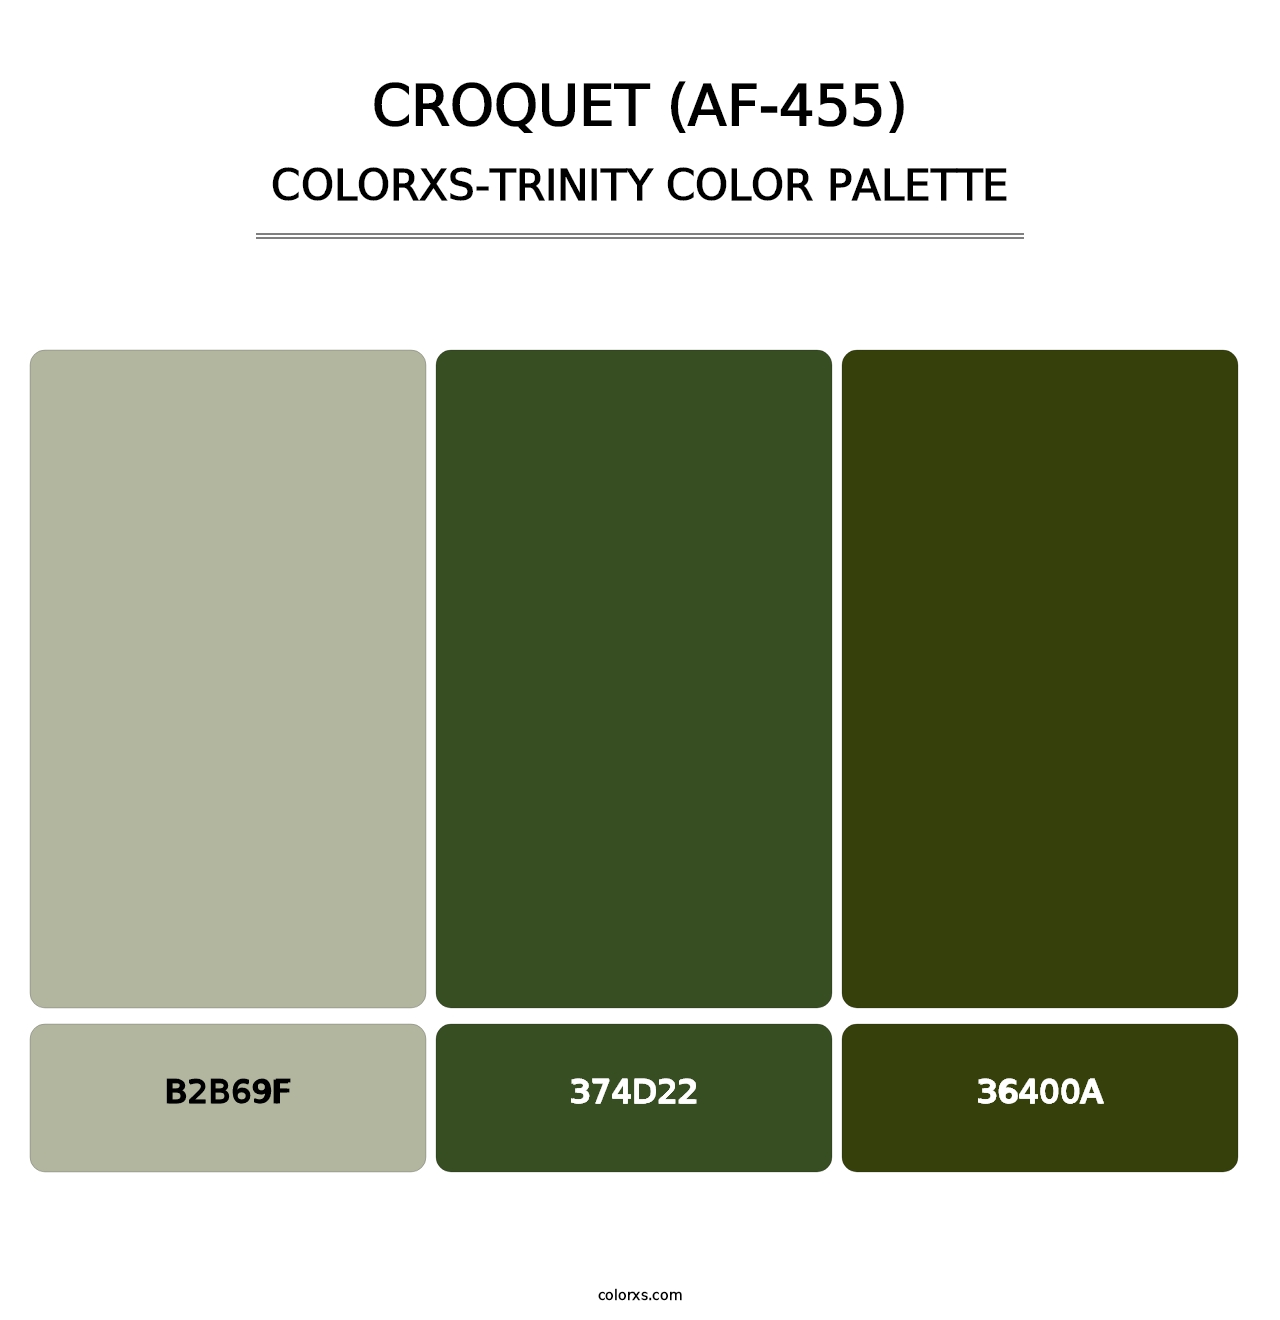 Croquet (AF-455) - Colorxs Trinity Palette